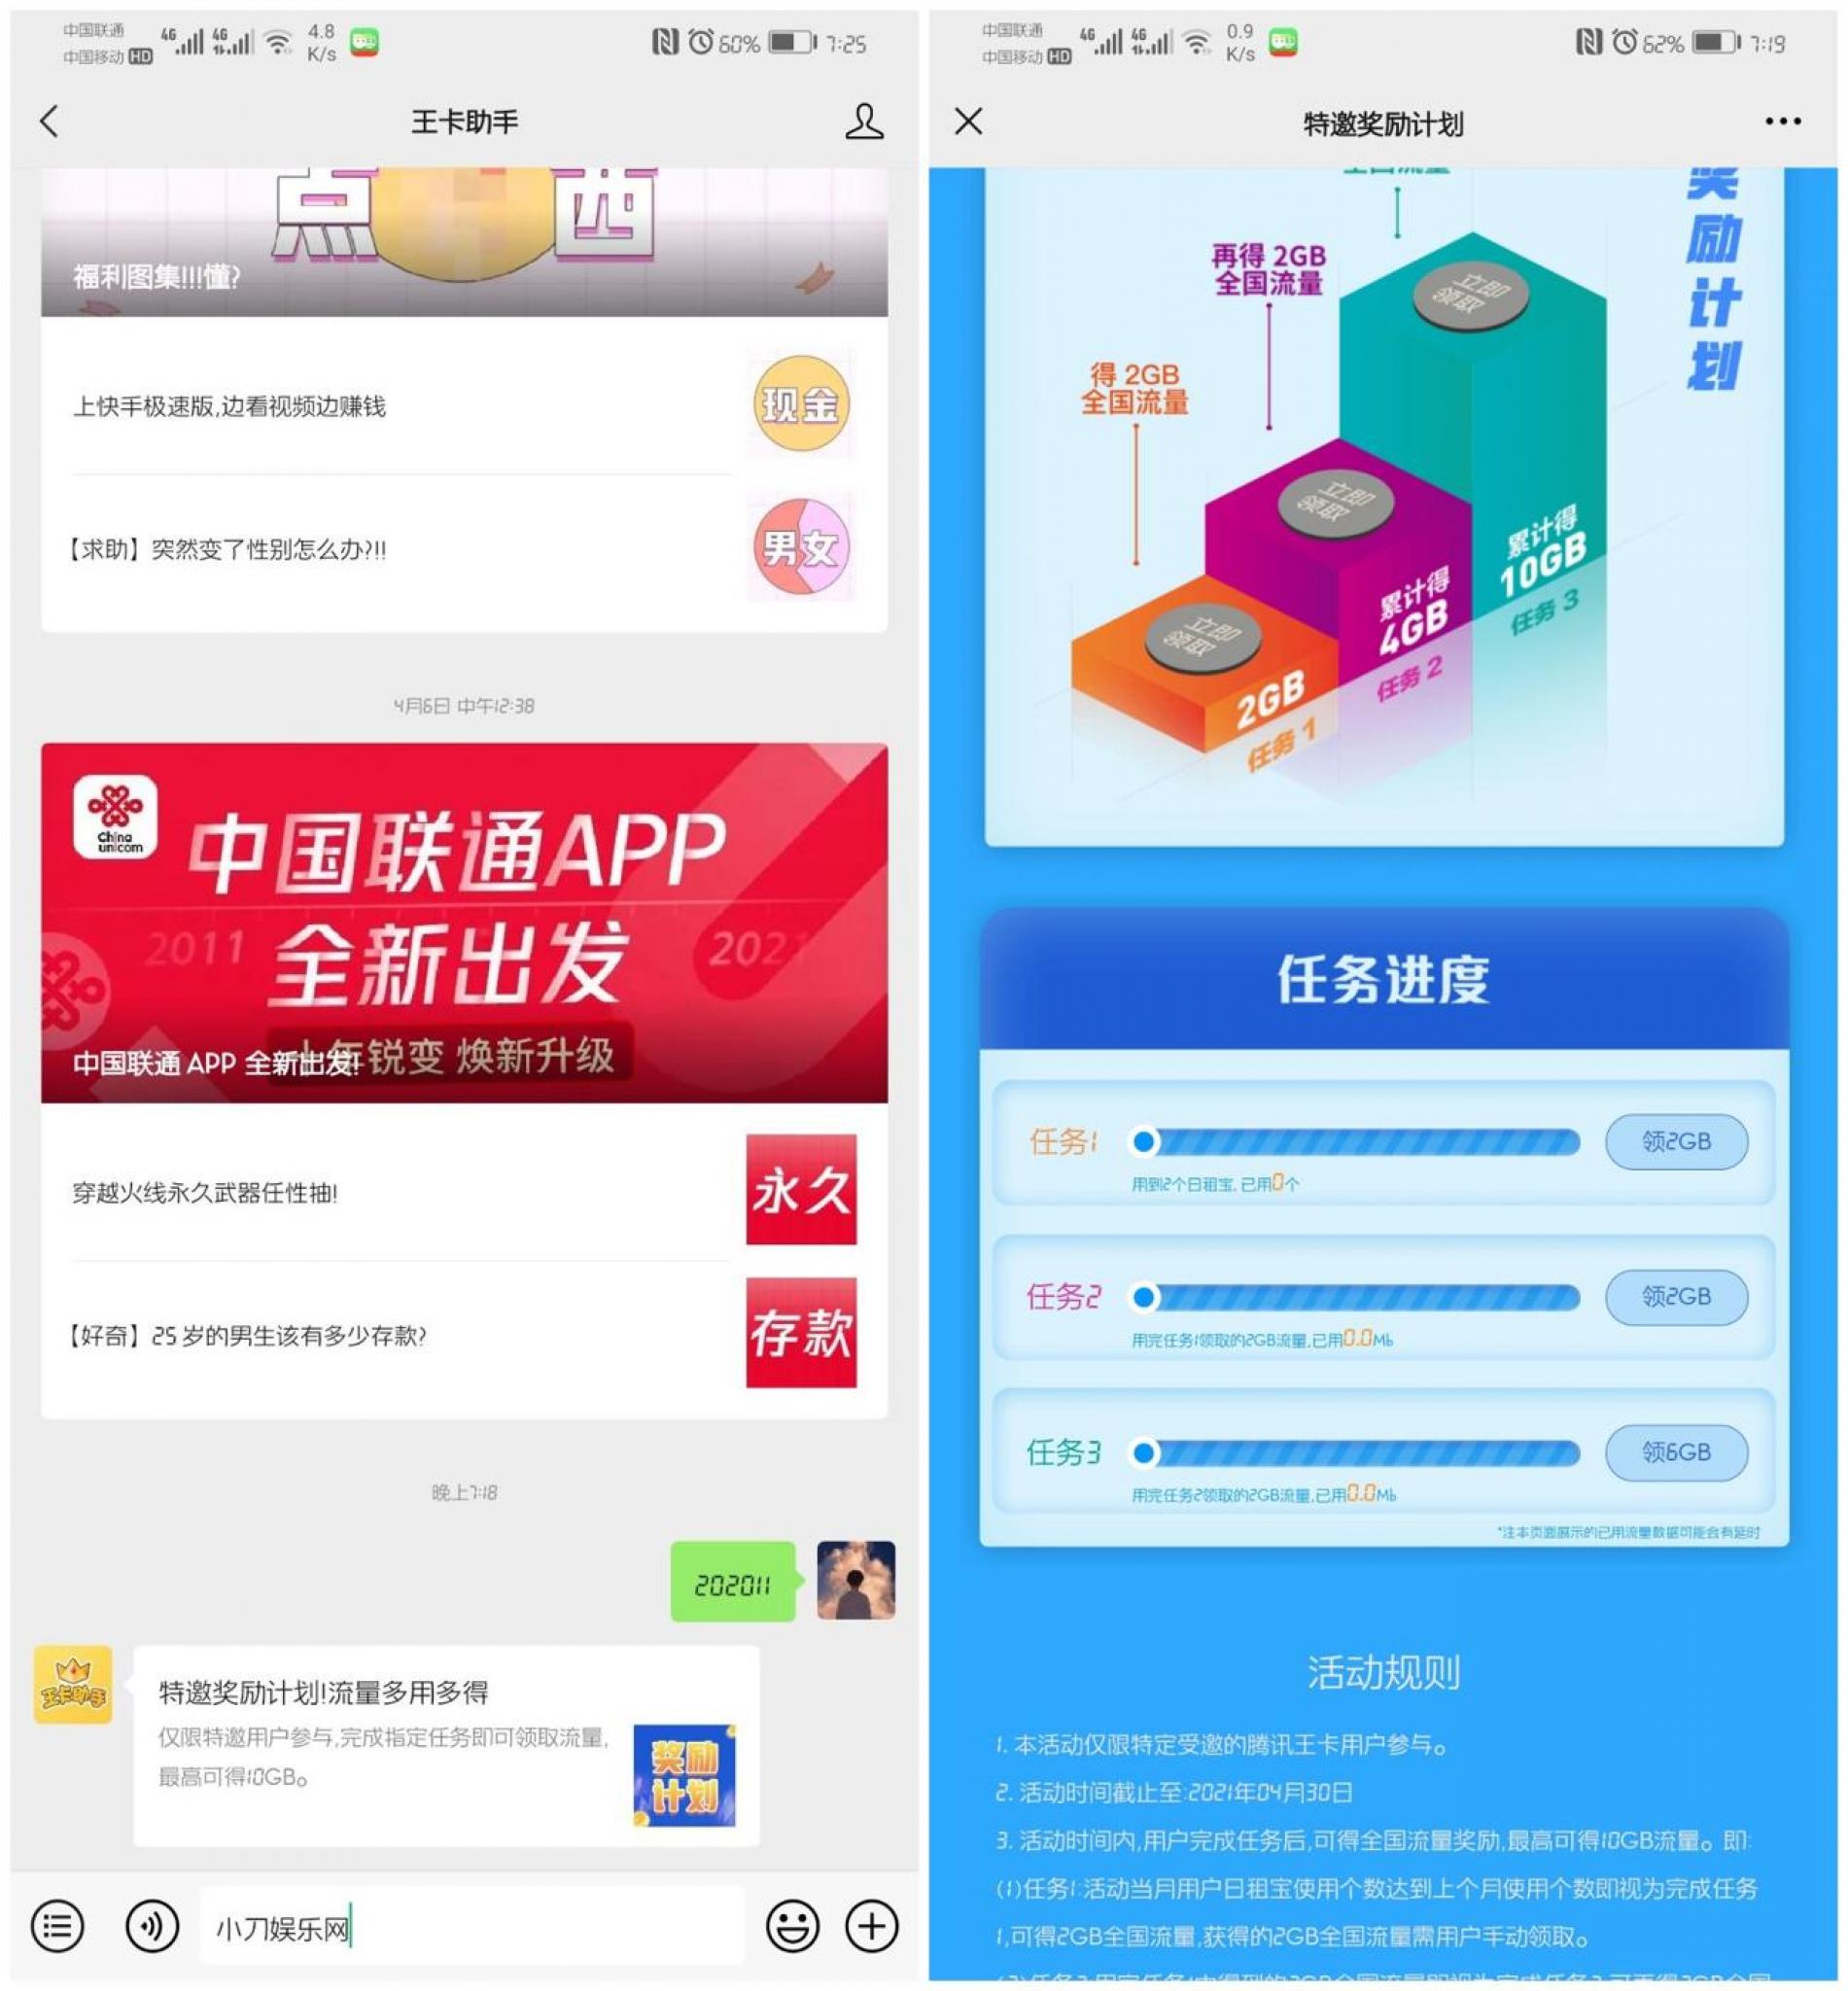 腾讯王卡特邀用户领10G流量-淘源码网